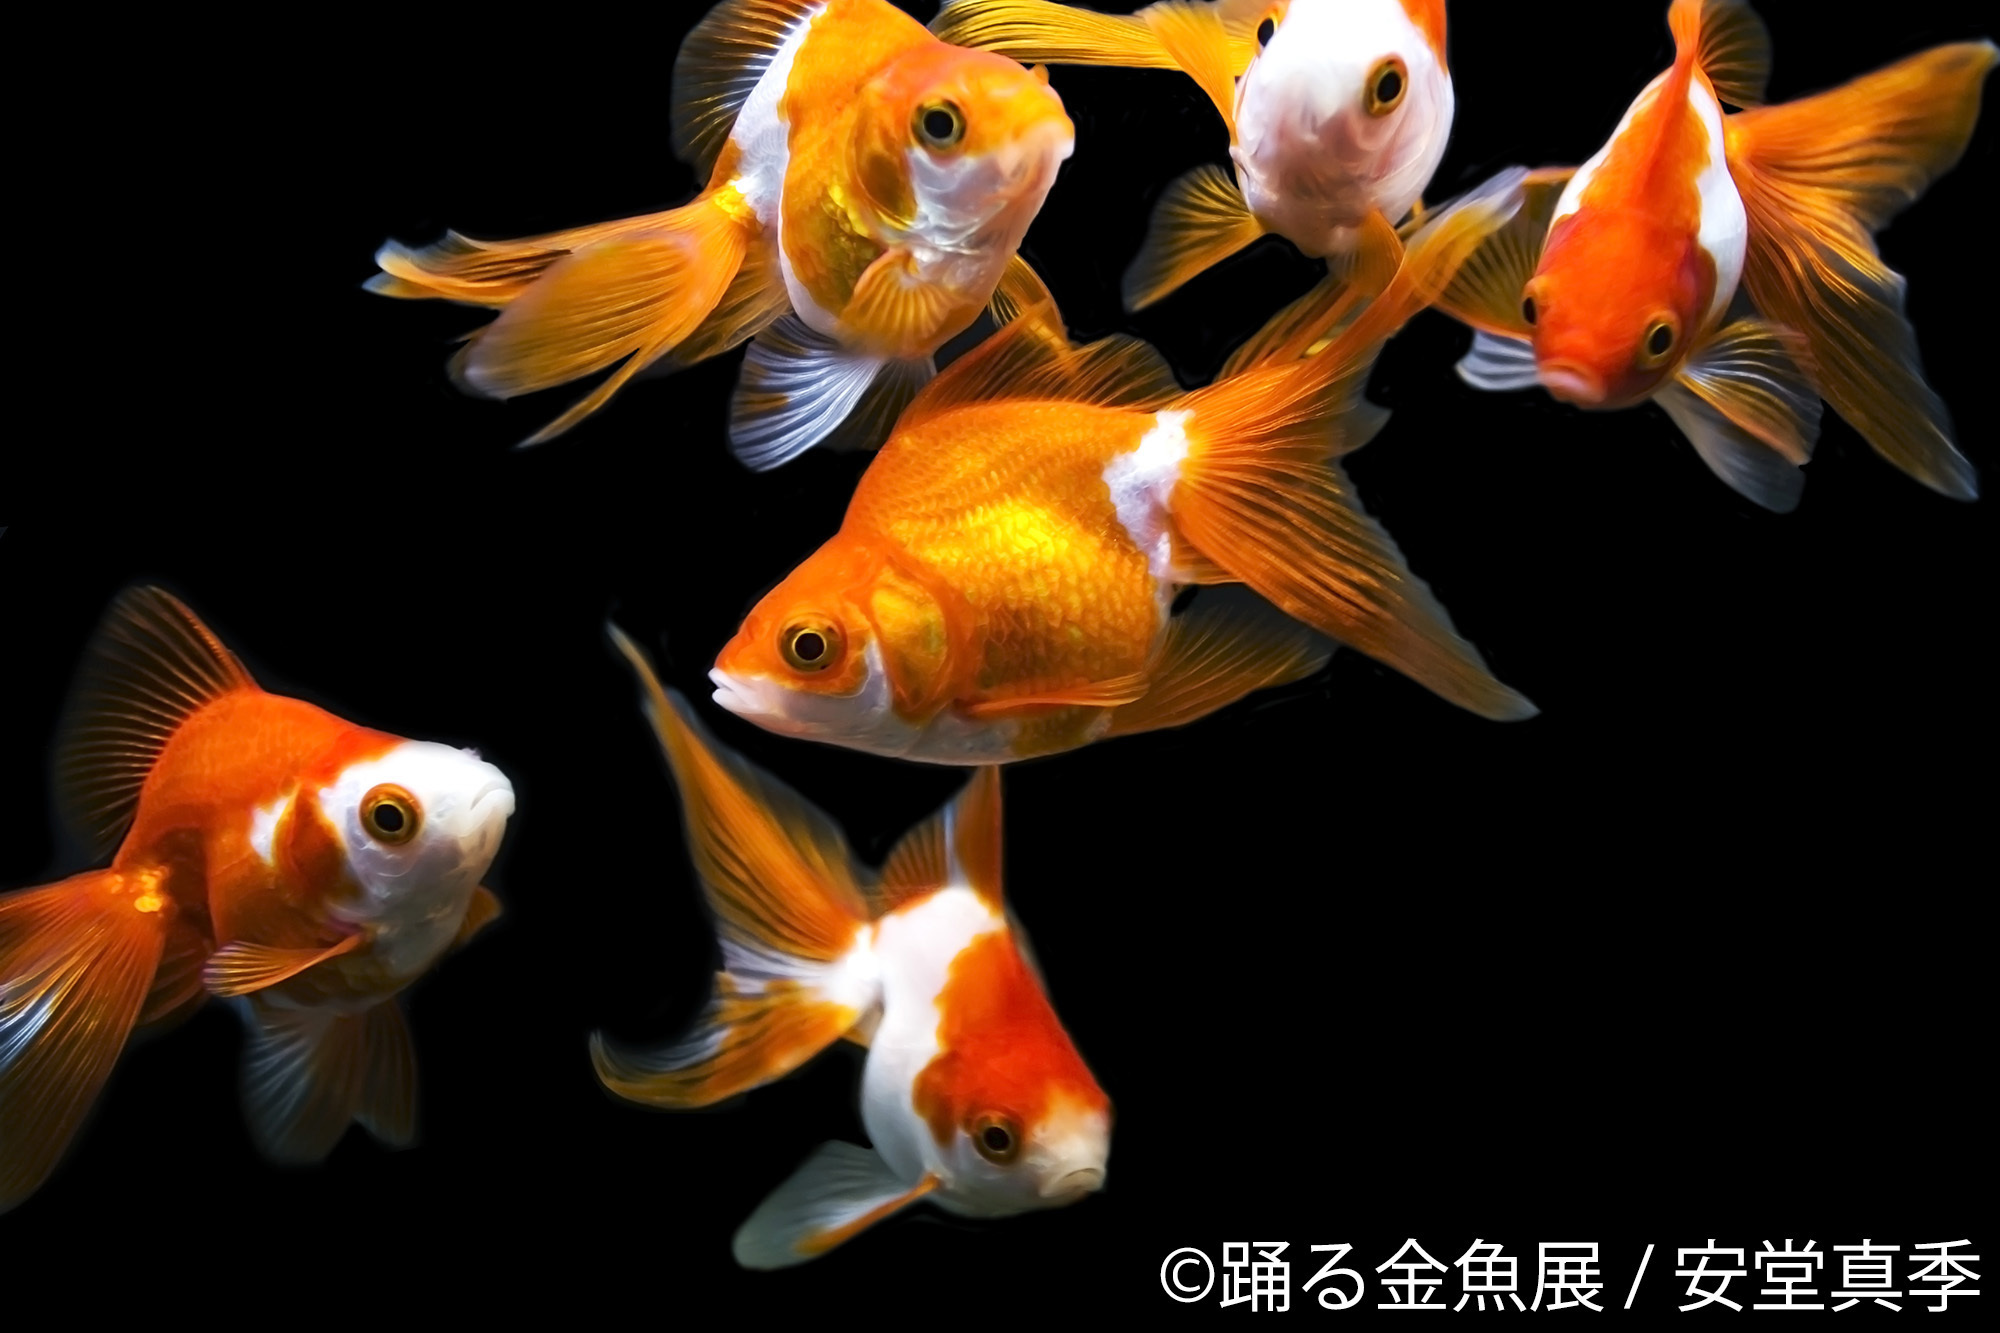 金魚の写真 イラスト グッズを集めた 踊る金魚展 東京と名古屋で開催 Spice エンタメ特化型情報メディア スパイス